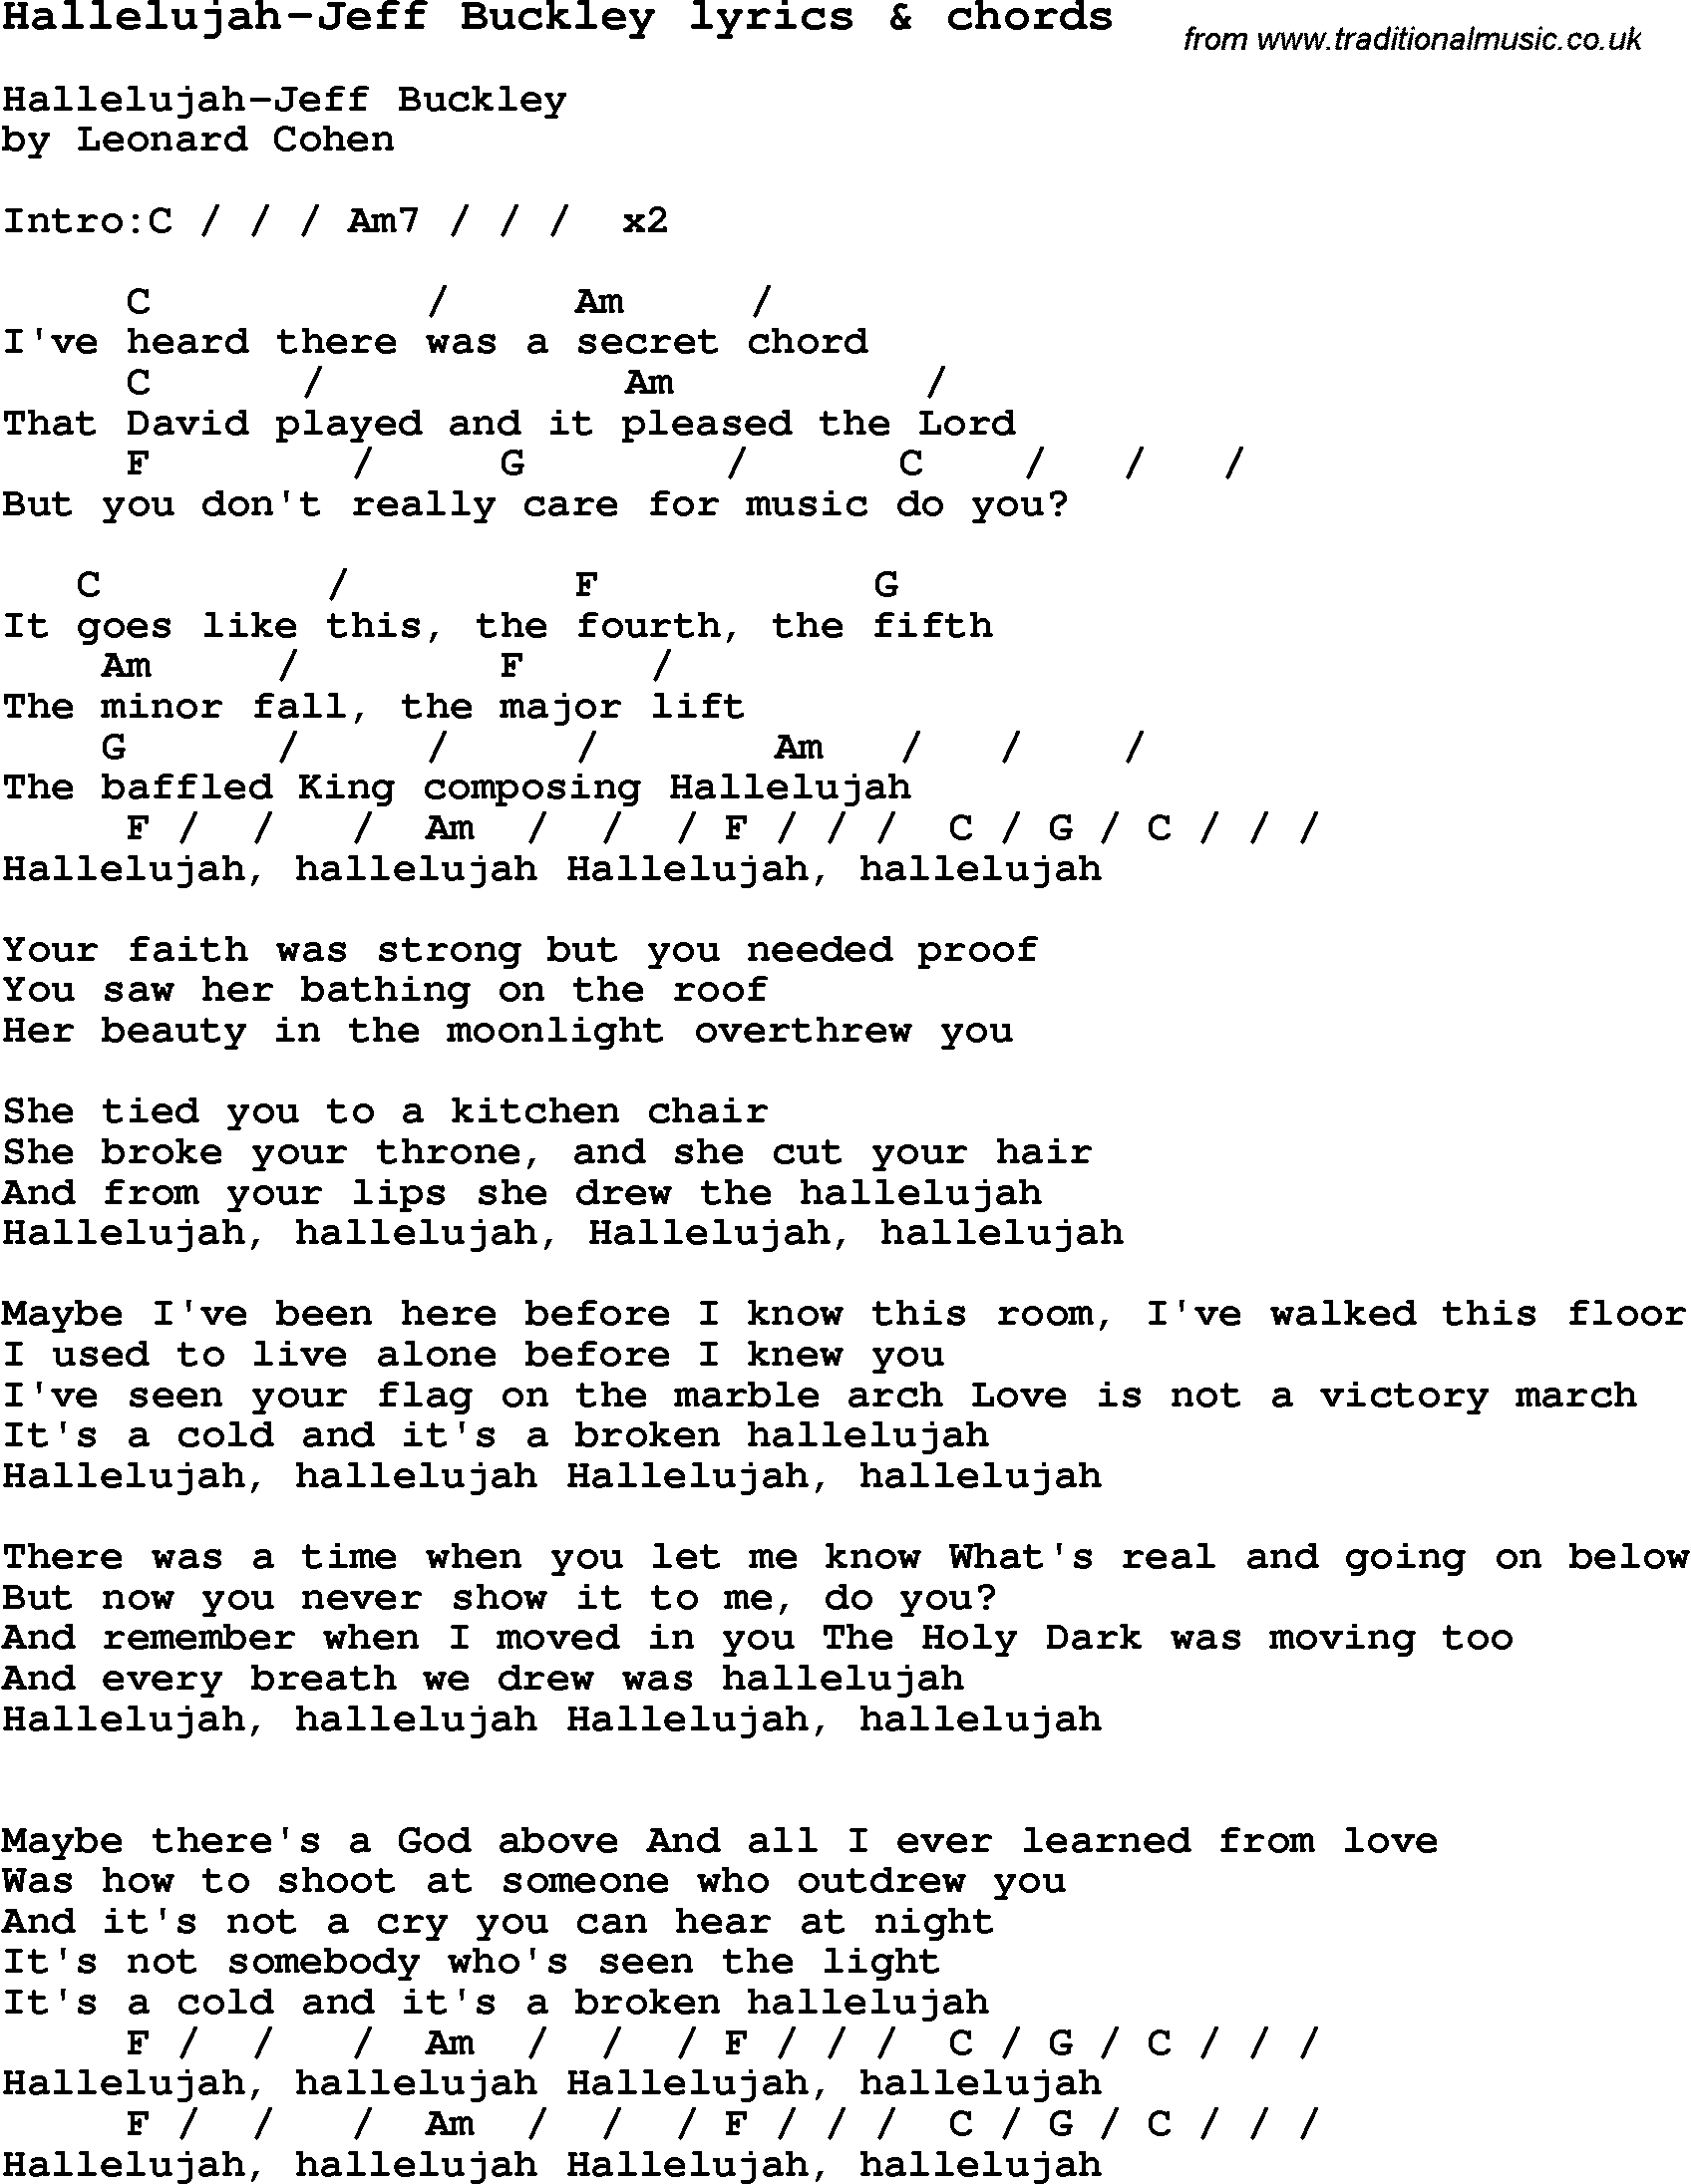 Hallelujah Ukulele Chords Love Song Lyrics Forhallelujah Jeff Buckley With Chords